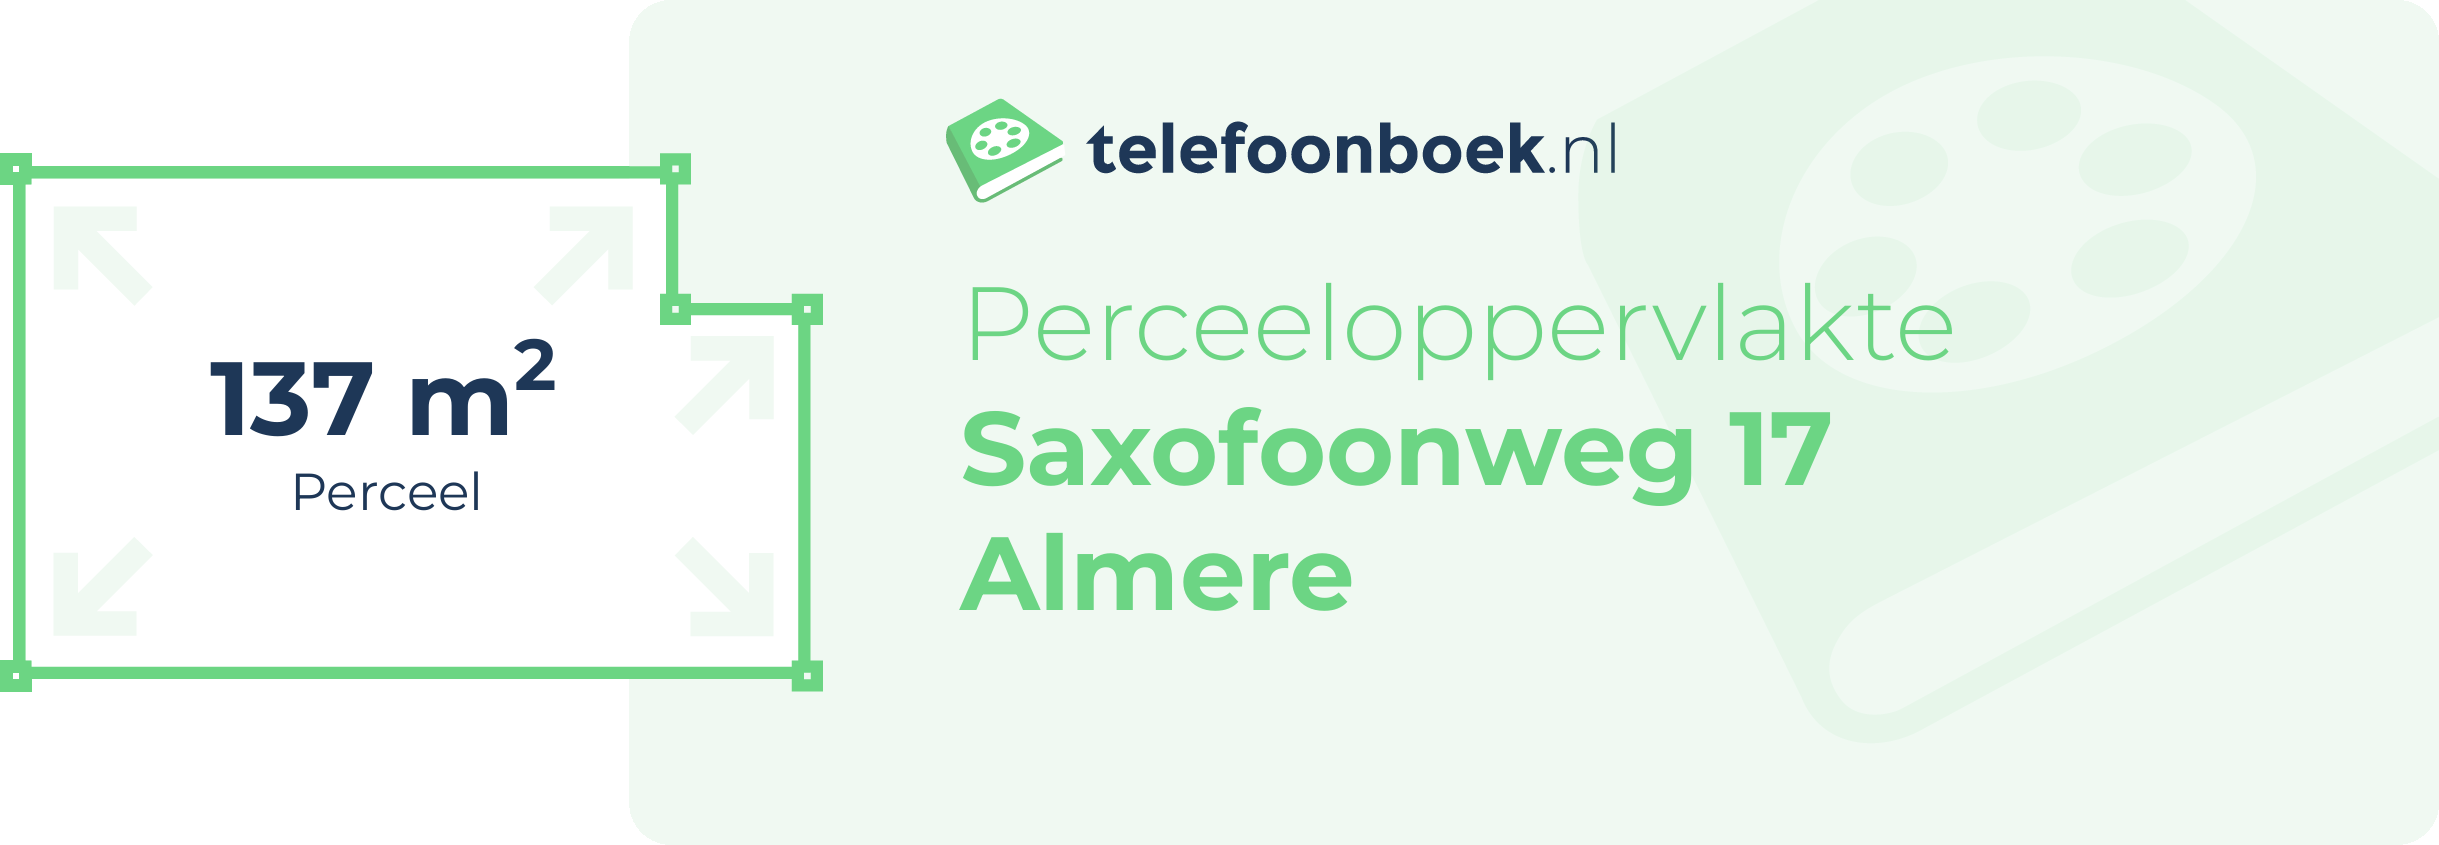 Perceeloppervlakte Saxofoonweg 17 Almere